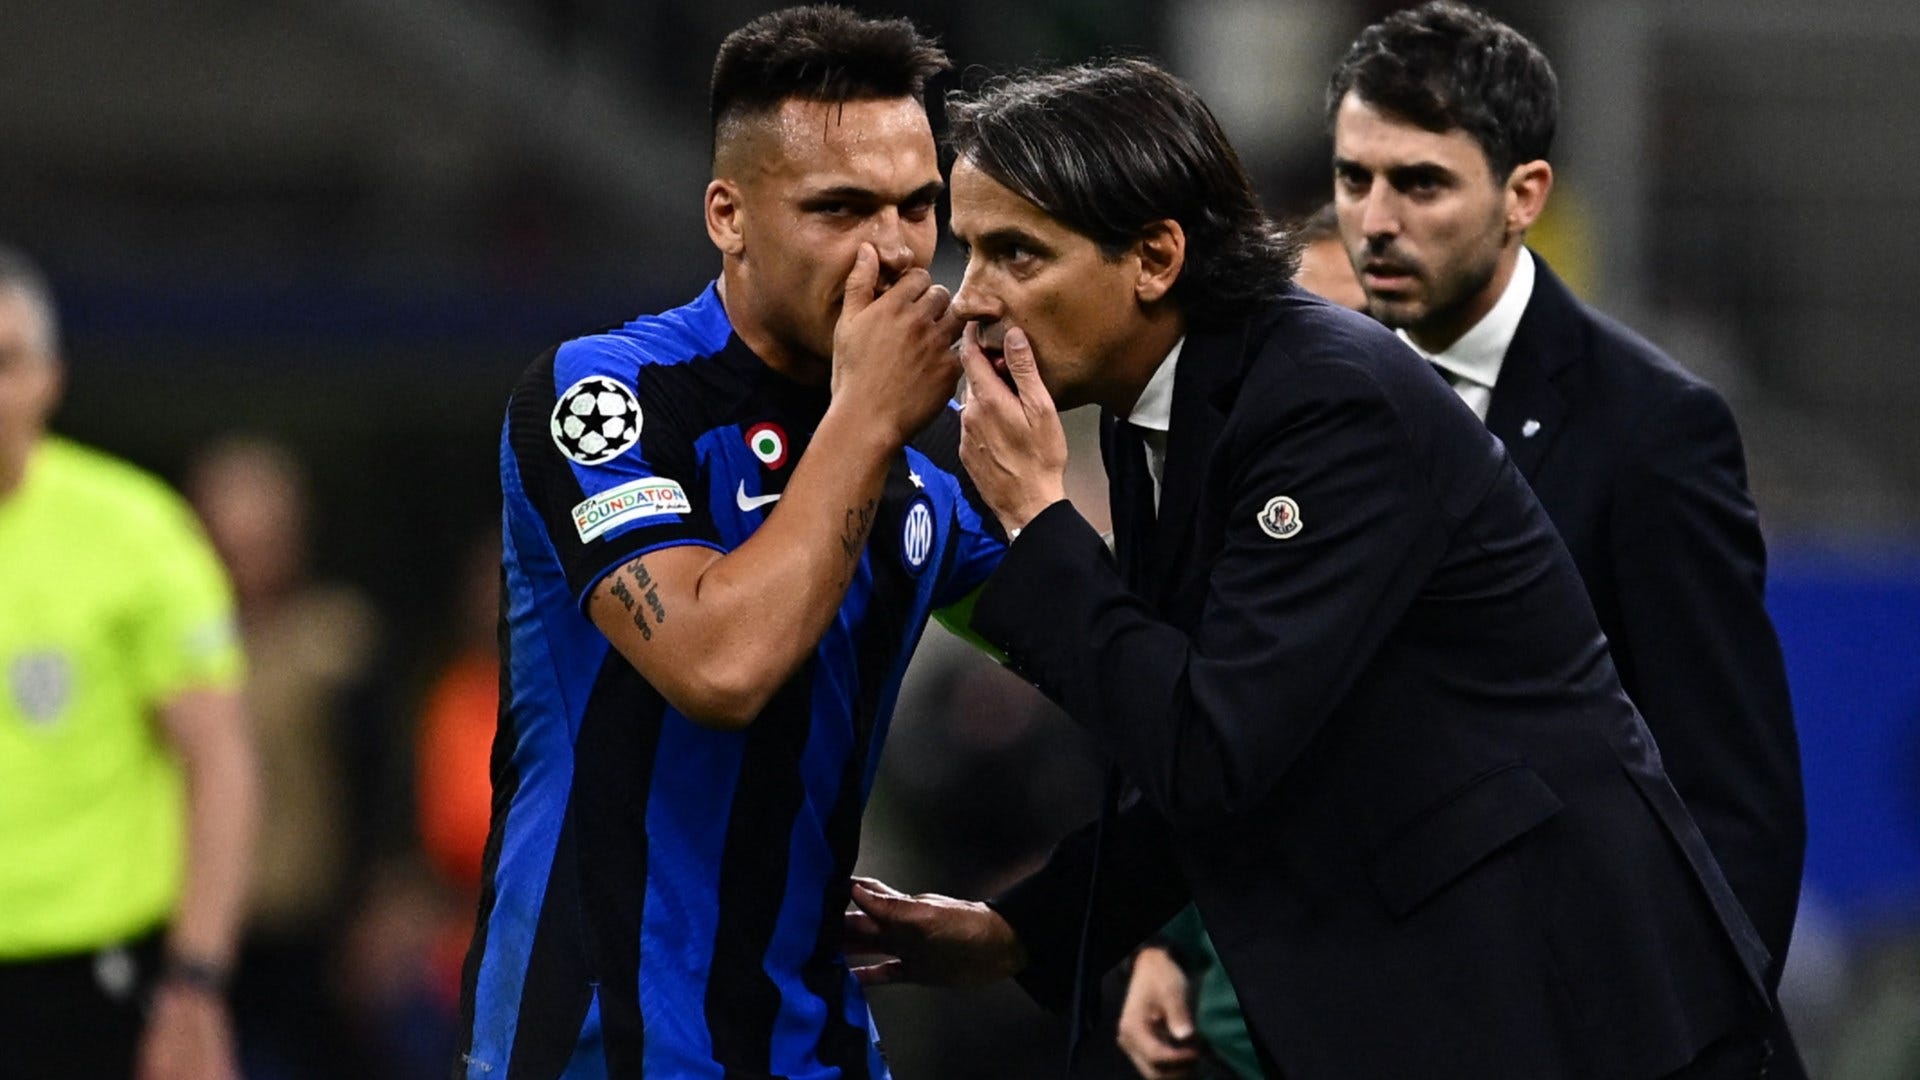 Buona la prima per l'Inter: 3-0 nel test contro il Lugano, in rete